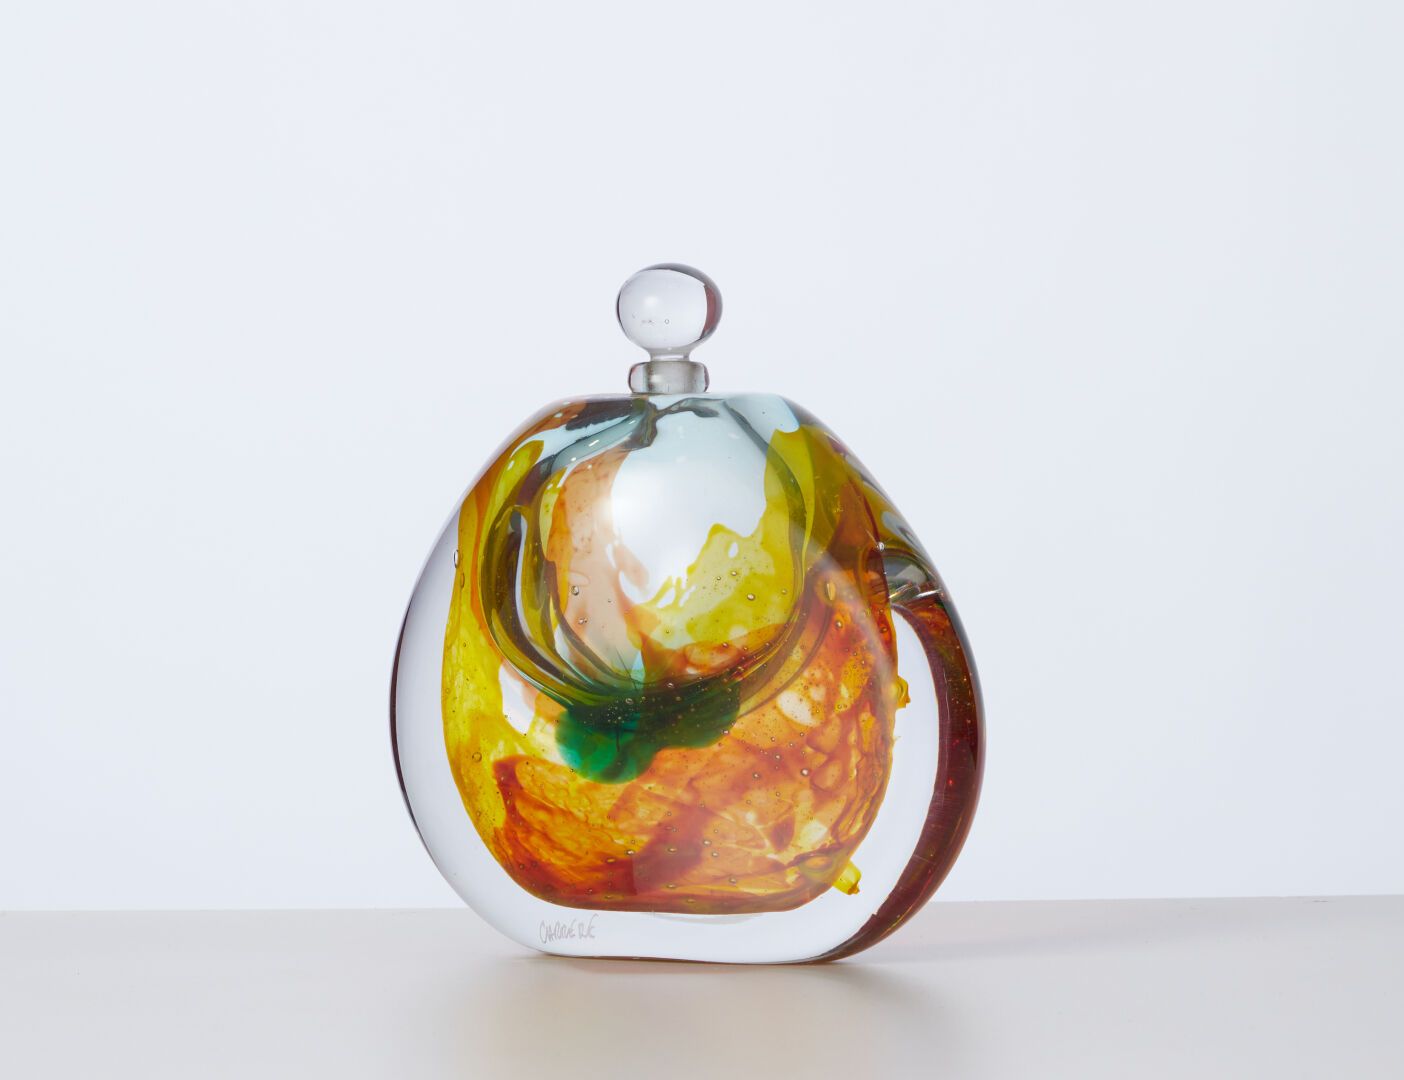 Null CARRERE Xavier (geboren 1966)
Eiförmige Glasflasche
H: 16 cm